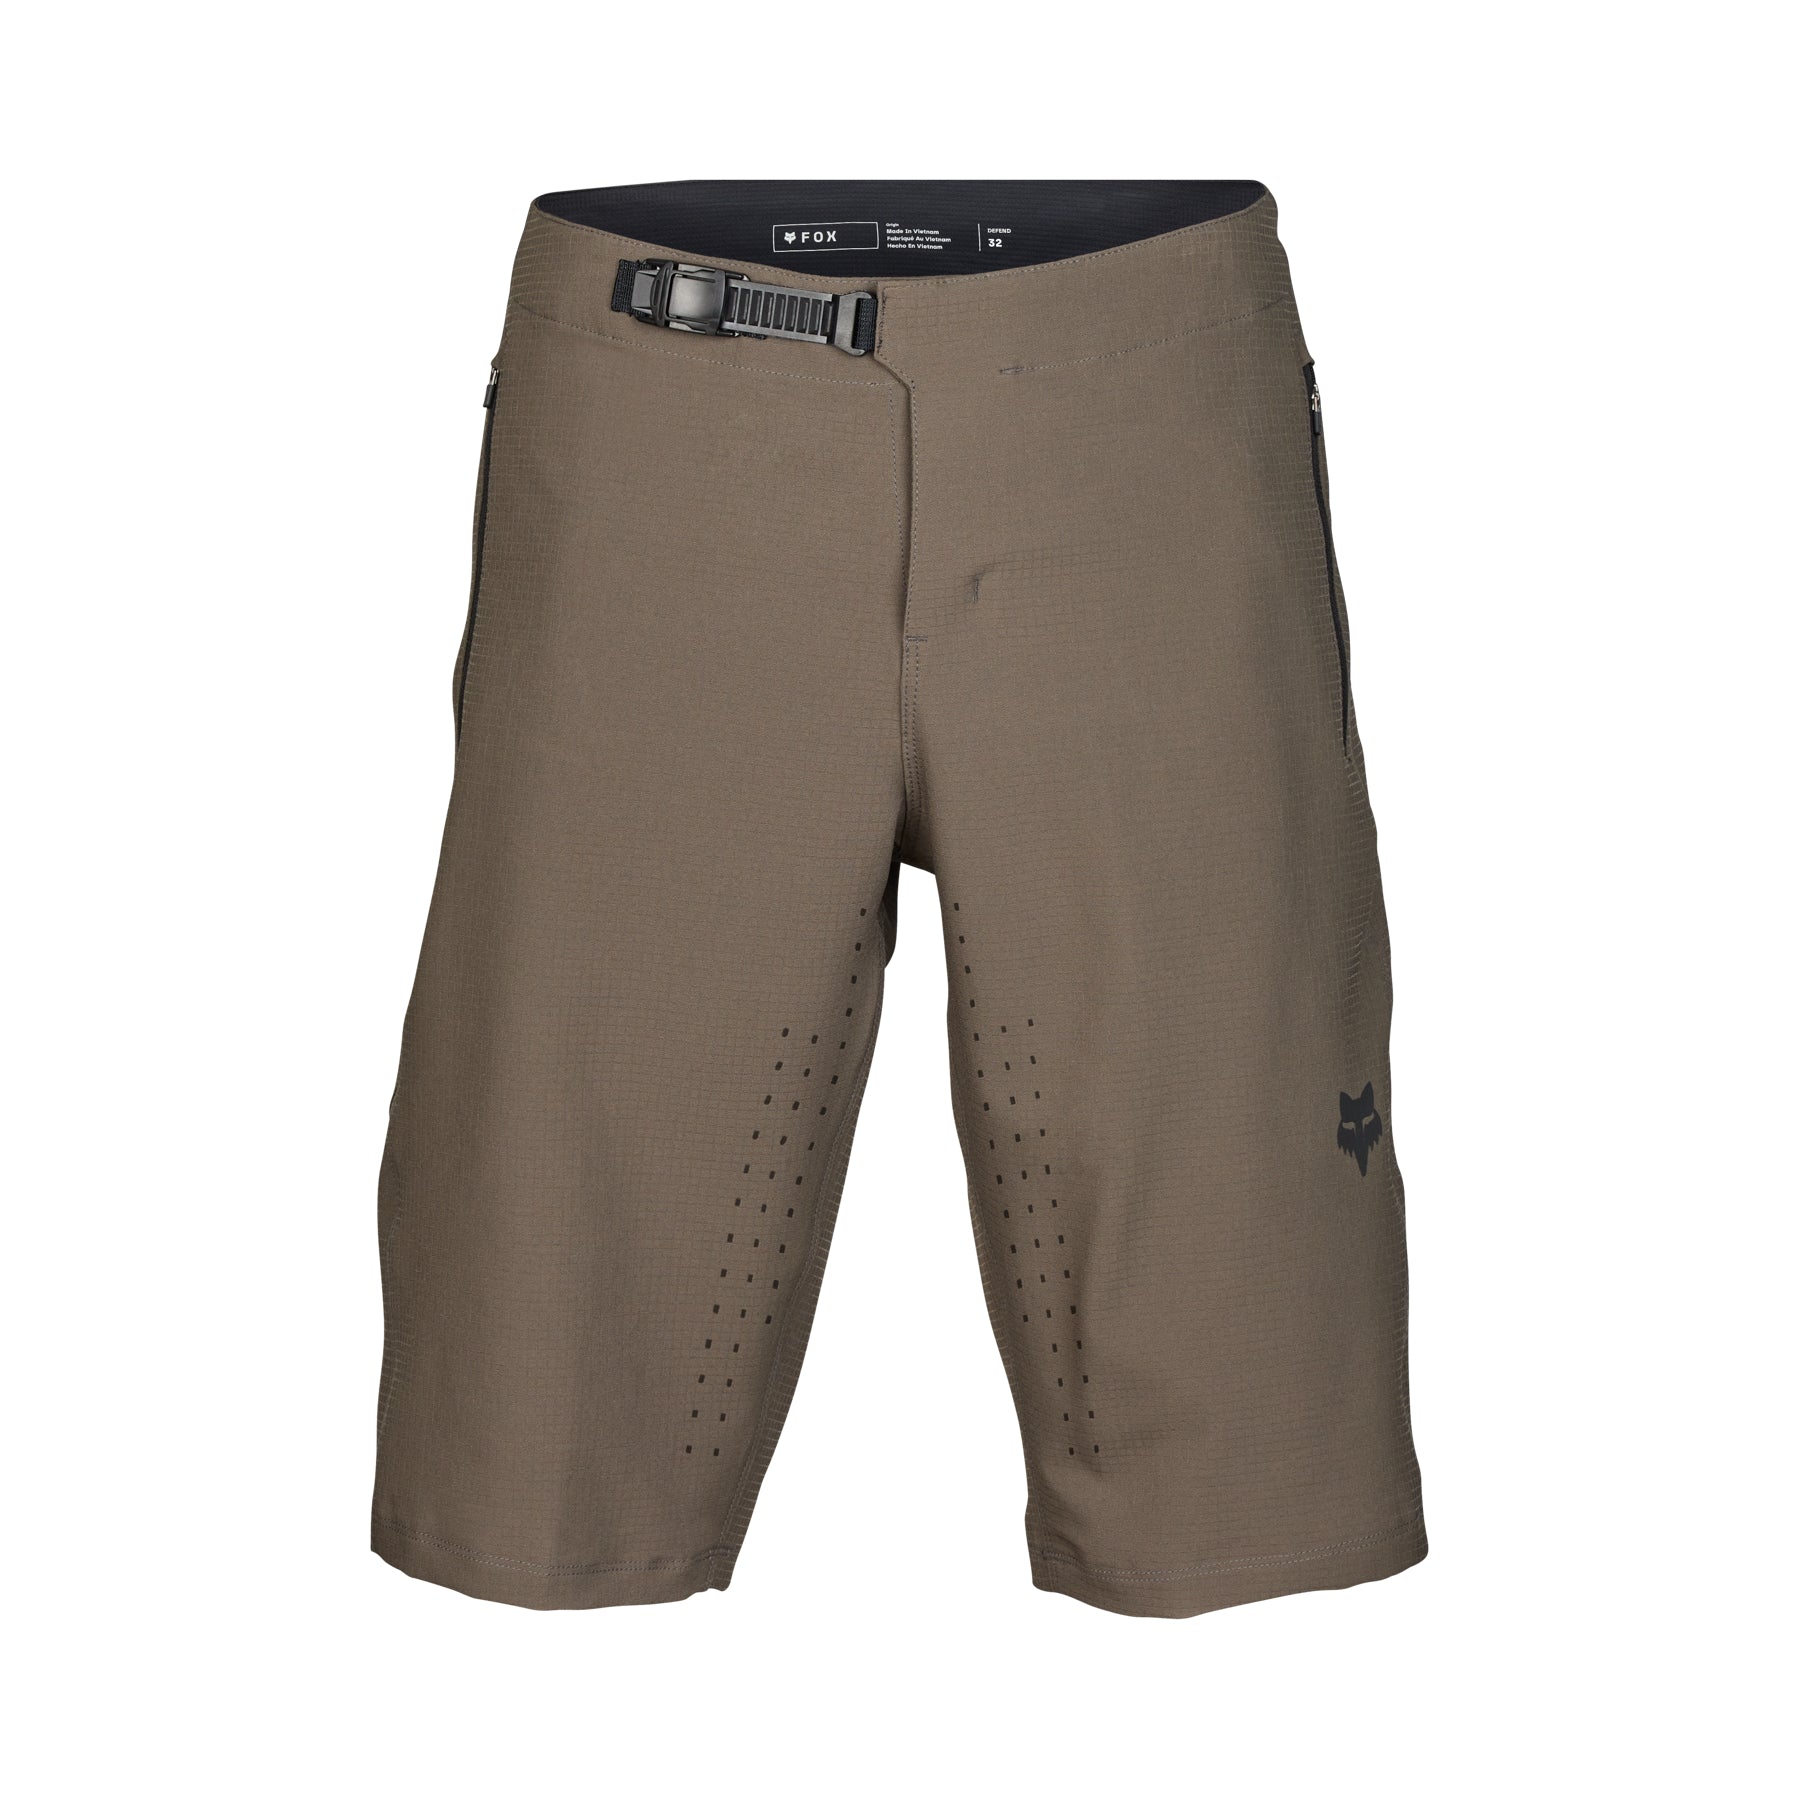 Fox Defend Shorts - L-34 - Dirt - Image 1